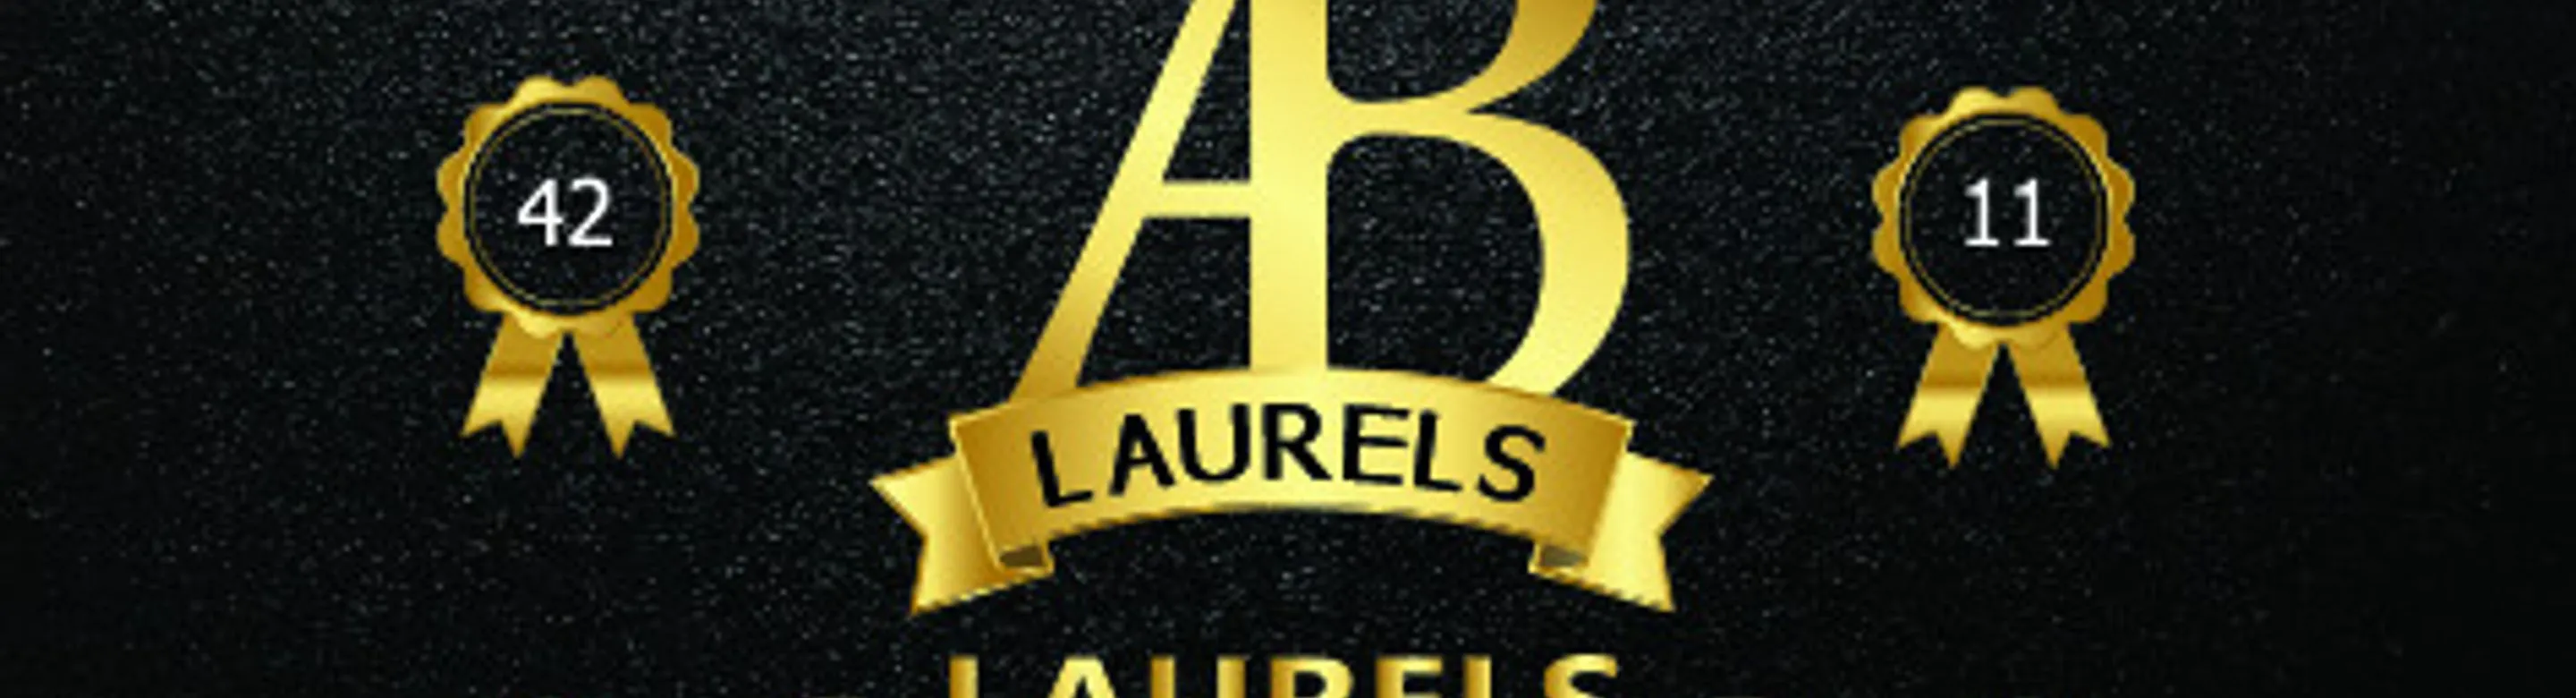 Ab laurels